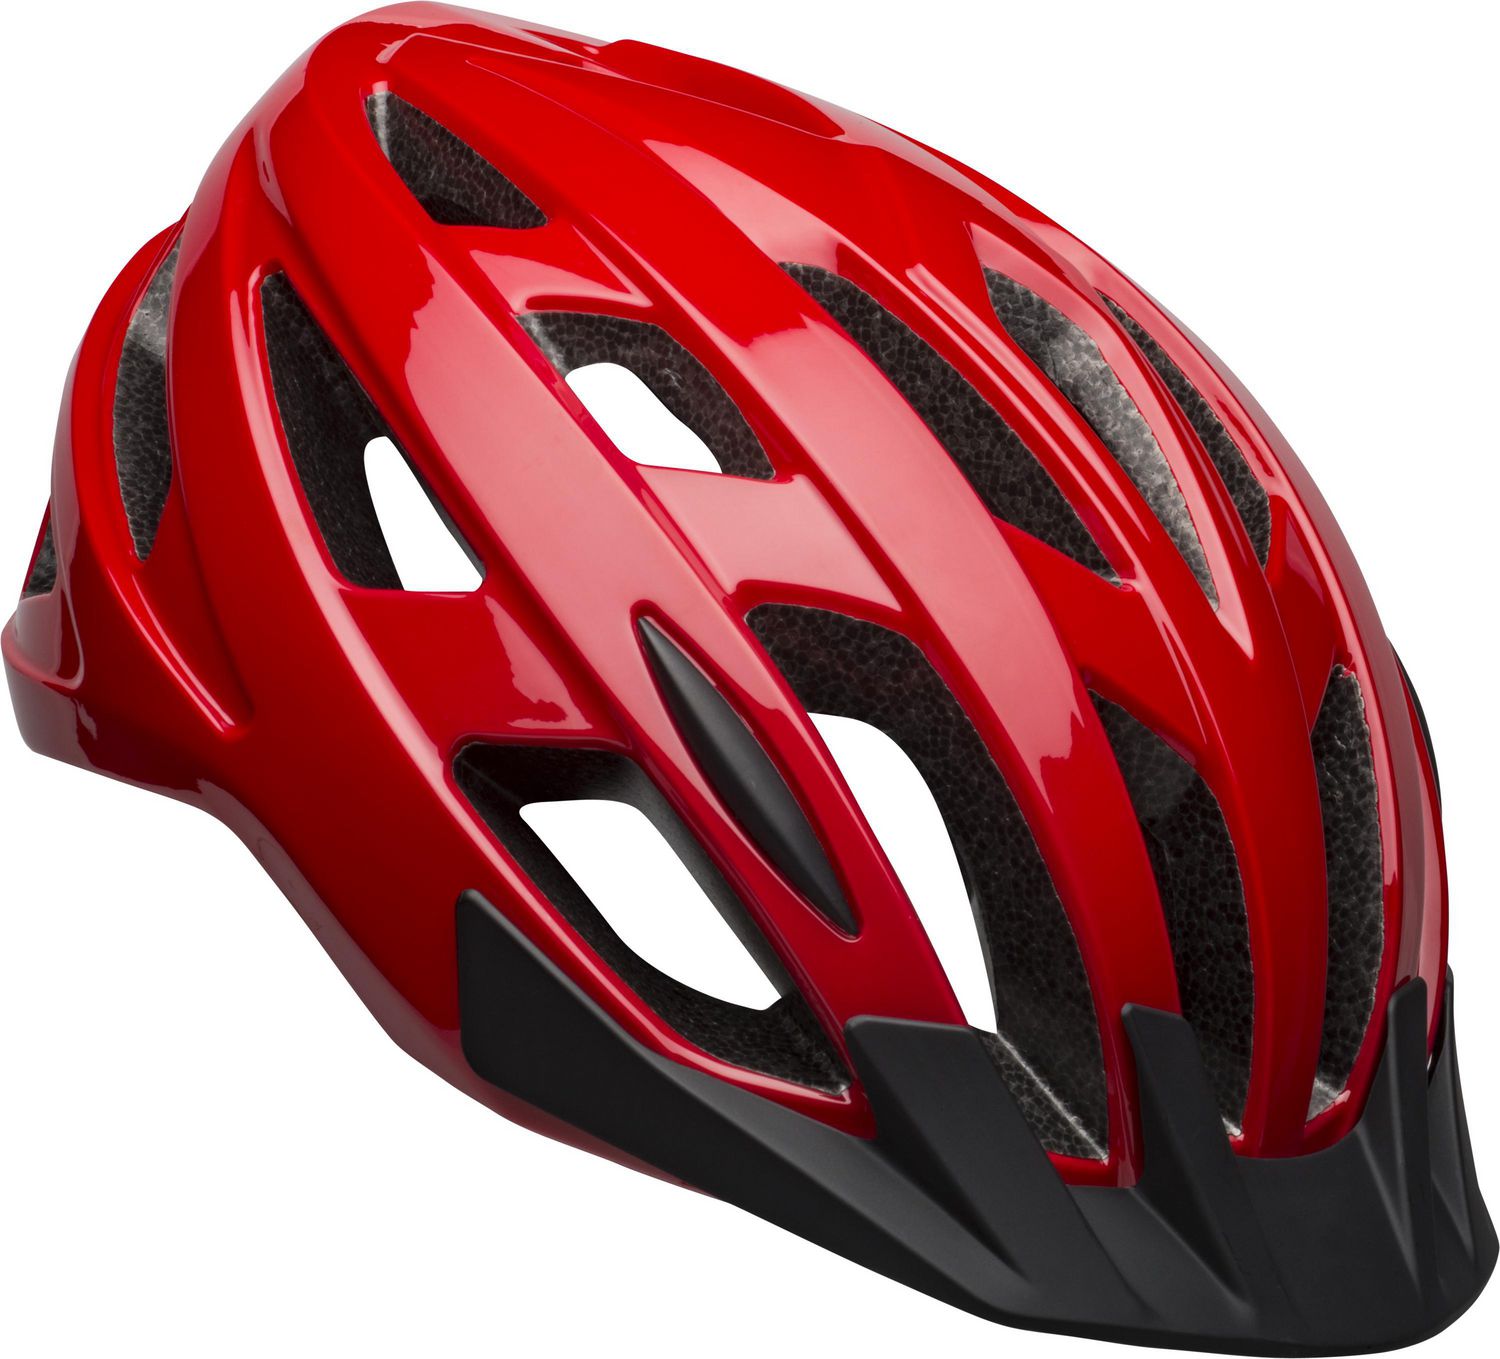 red helmet for bike